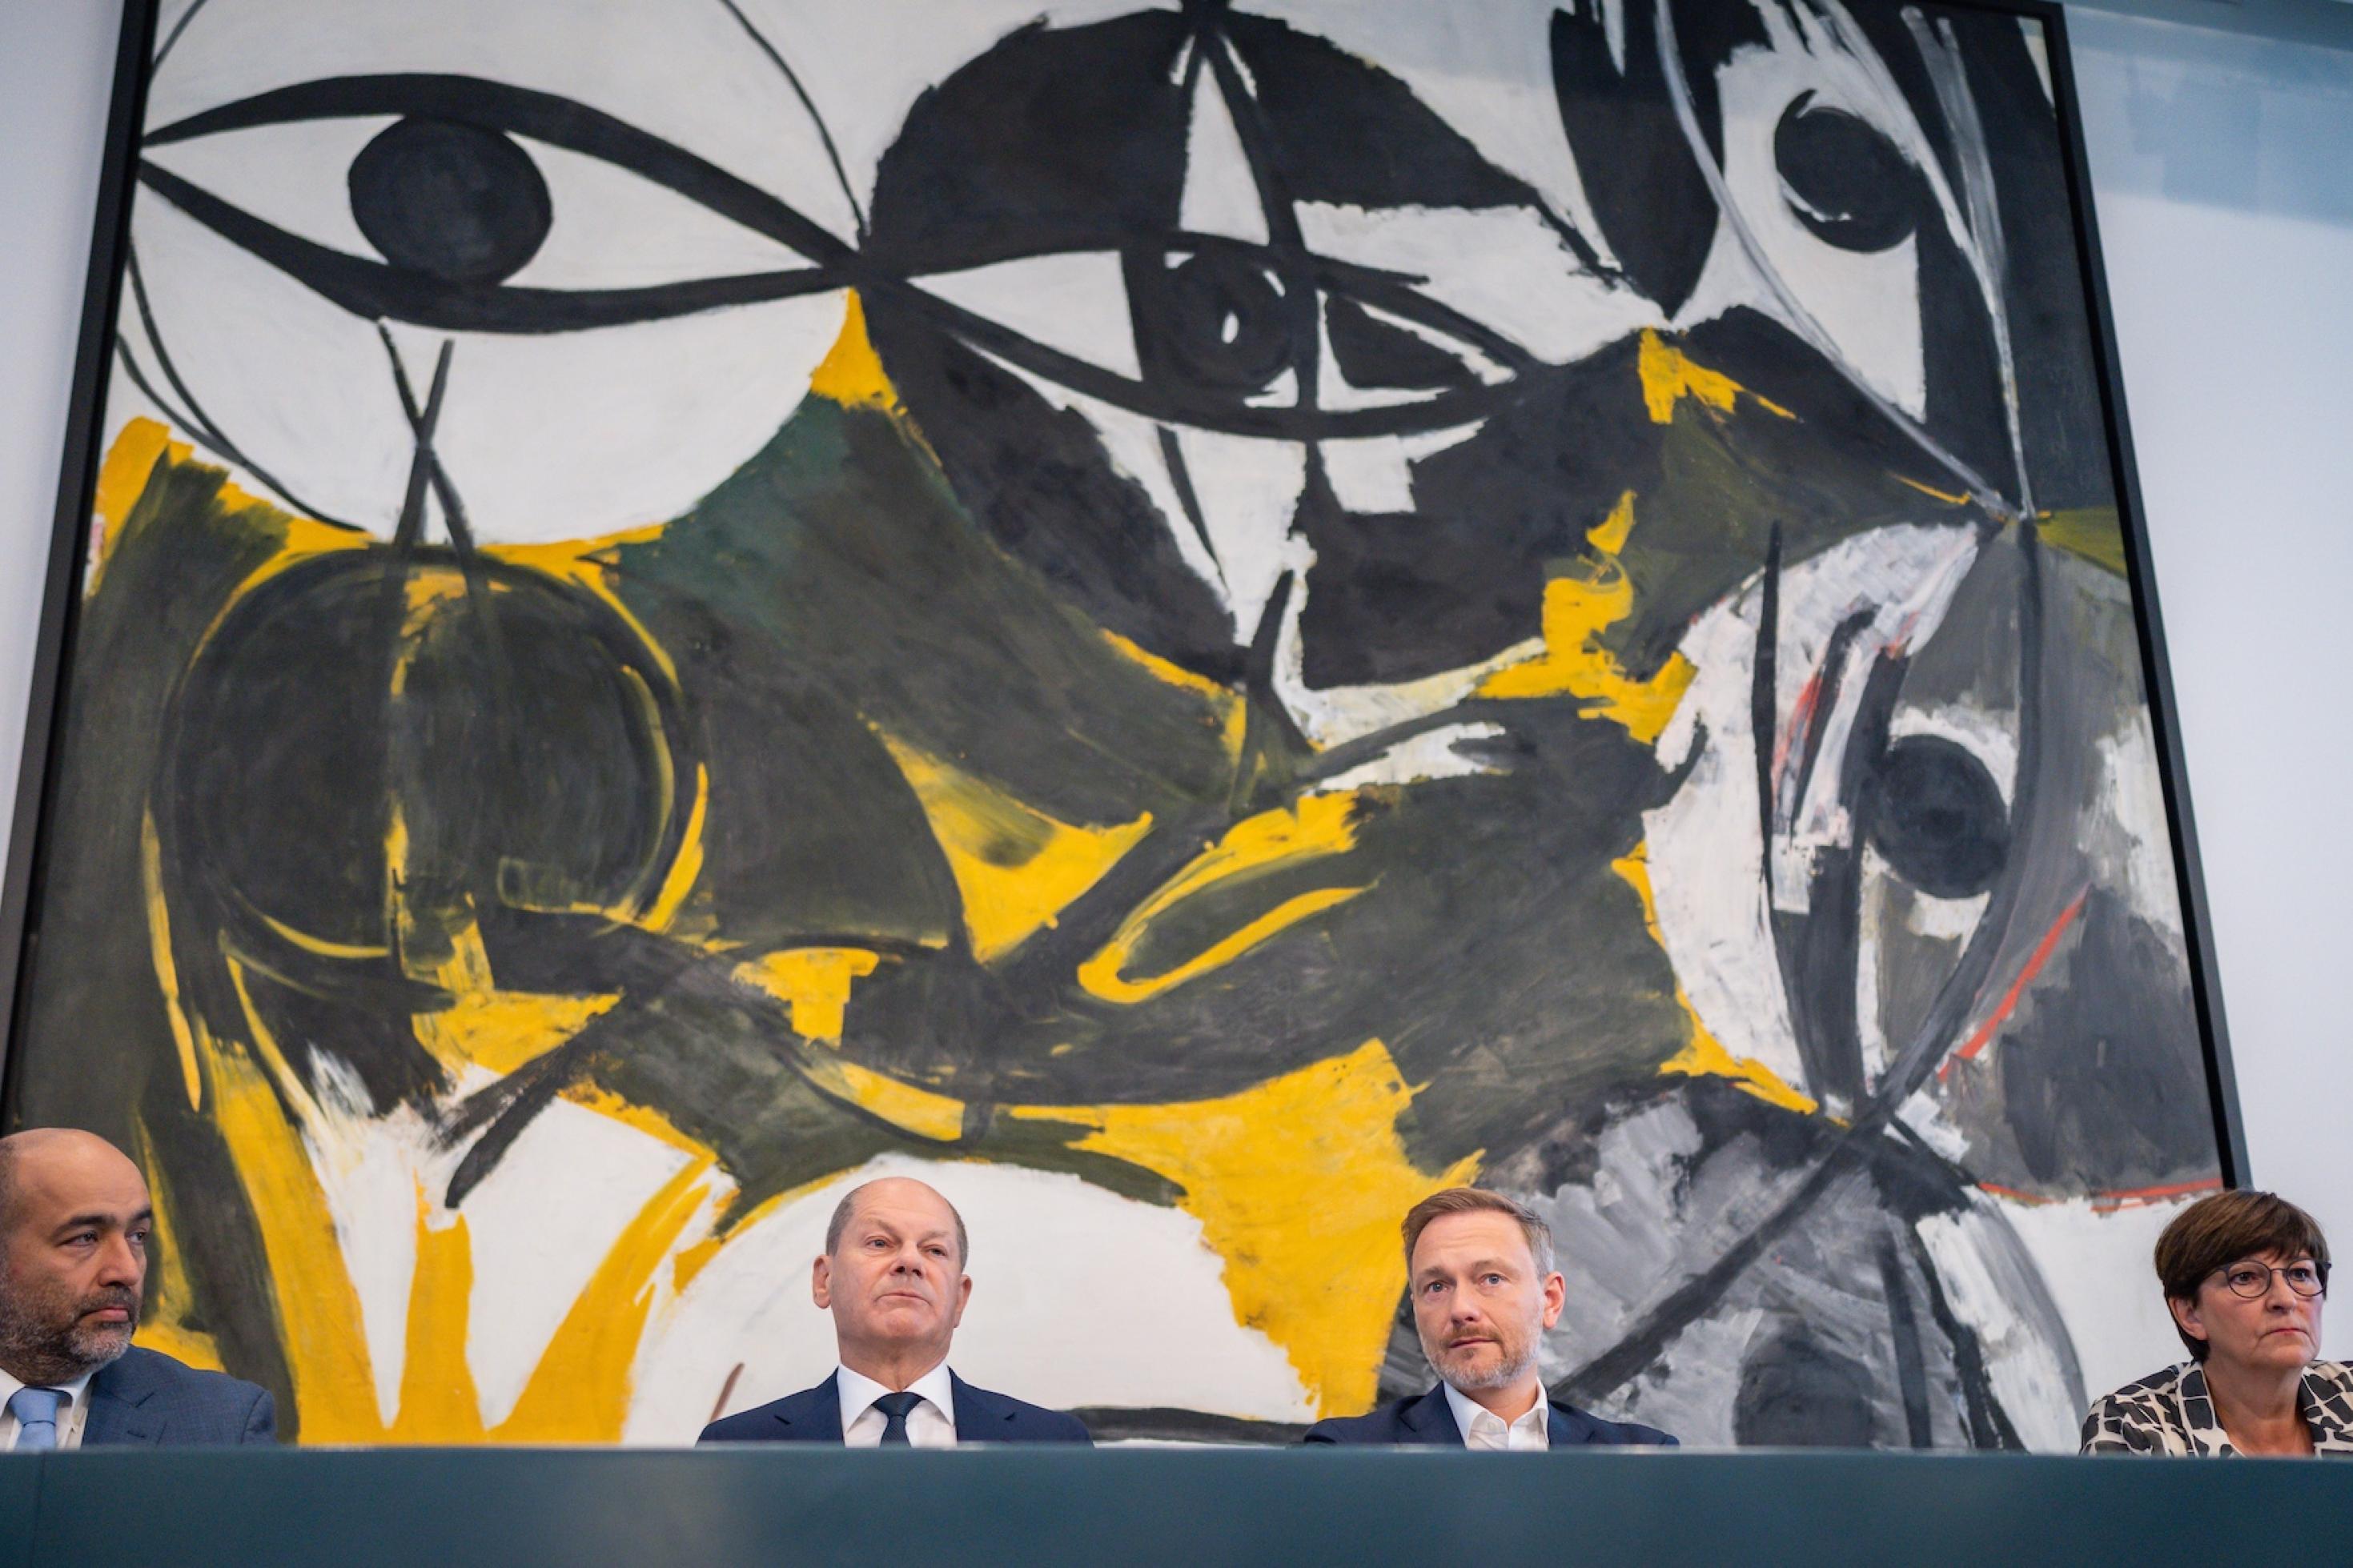 Die vier Politiker sitzen vor einem großen Kunstwerk, das von großen Augen geprägt ist.